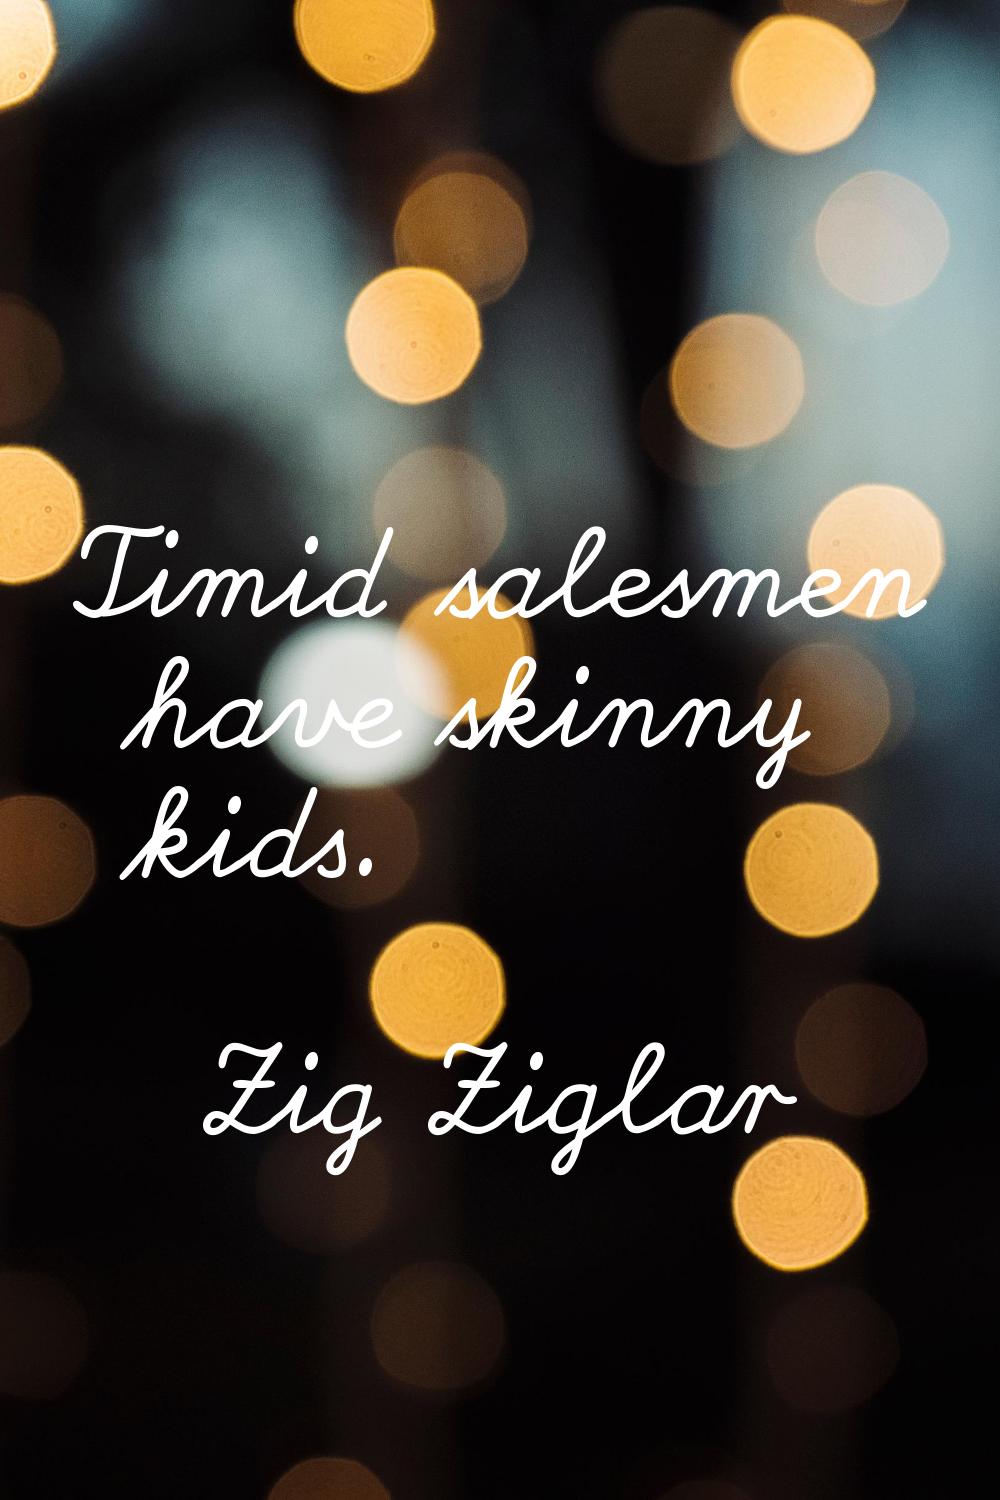 Timid salesmen have skinny kids.